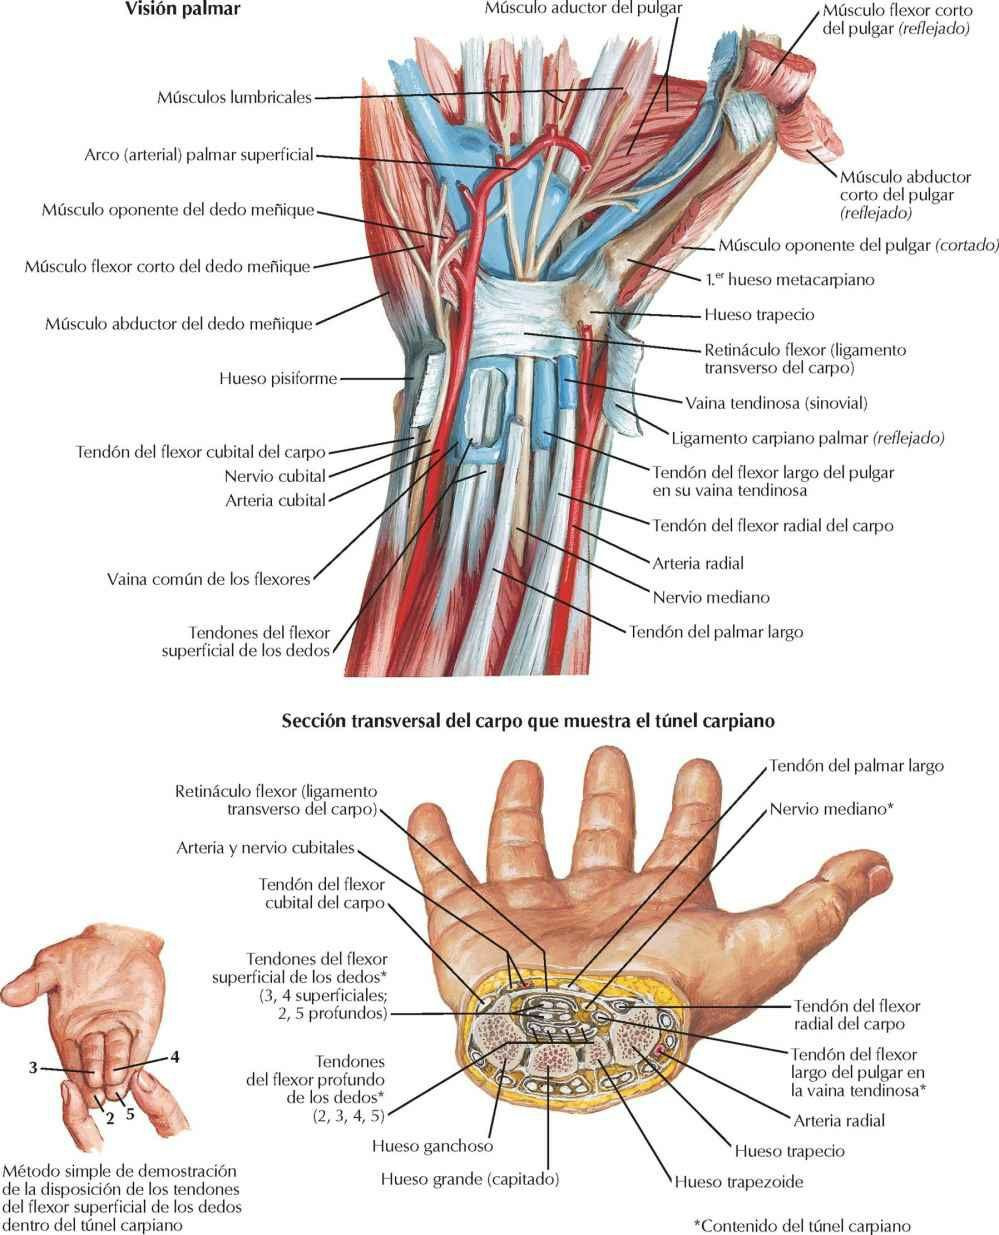 Tendones flexores, arterias y nervios en el carpo